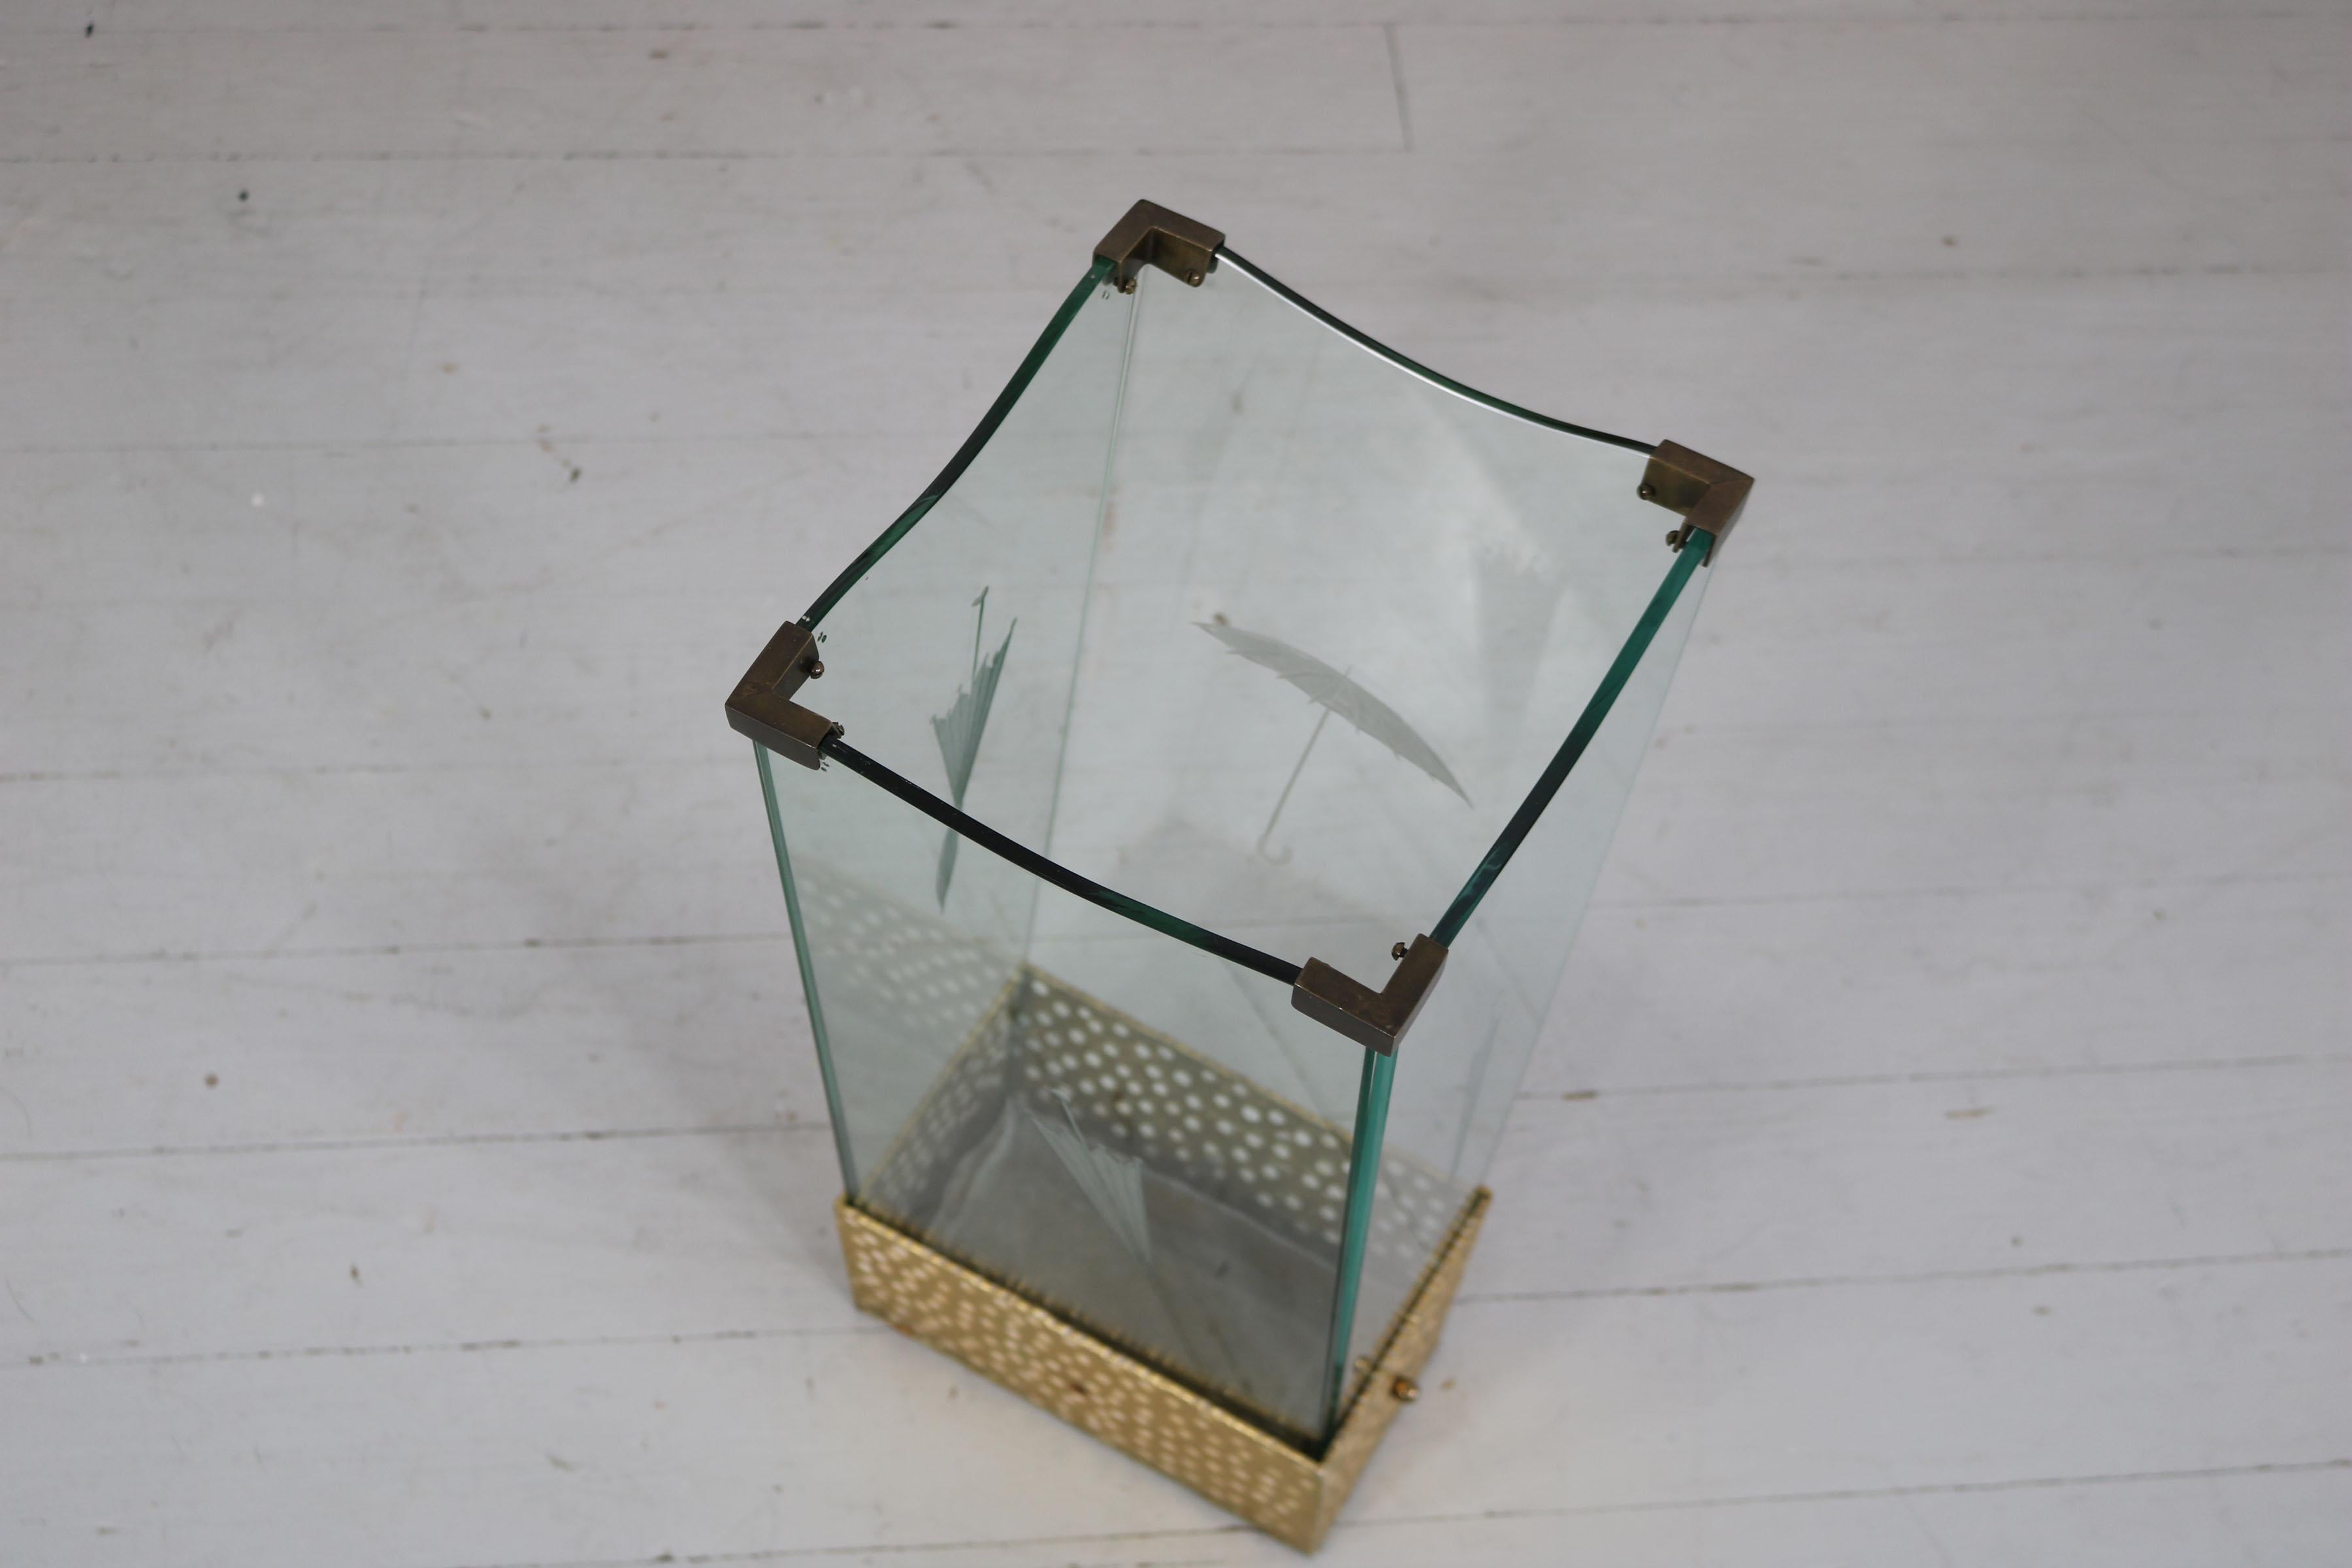 Porte-parapluies en verre gravé et laiton, attribué à Pier Luigi Colli.
La boîte métallique située en dessous peut être retirée pour vider l'eau. 